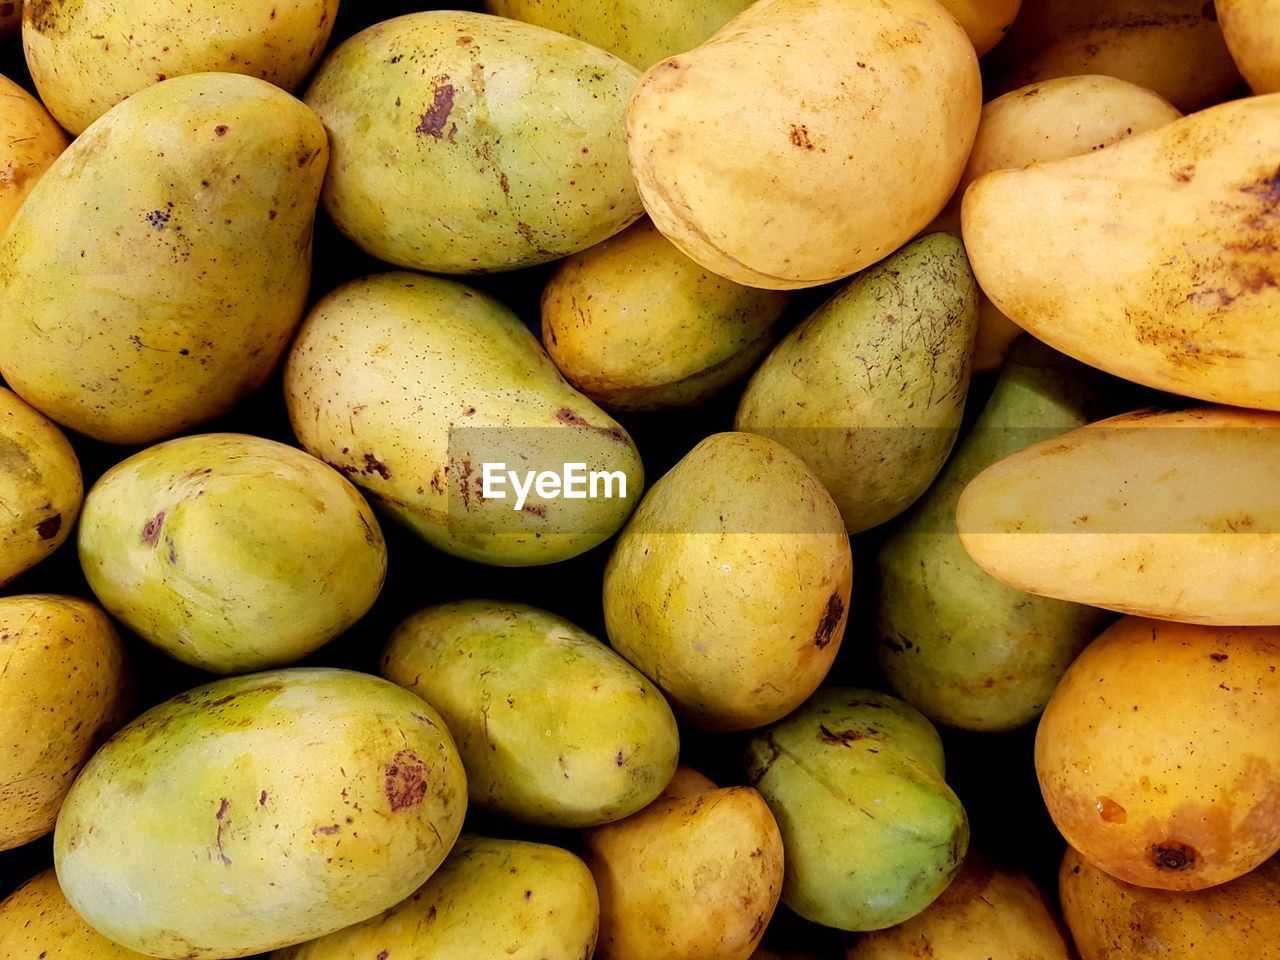 Full frame shot of mangoes in market